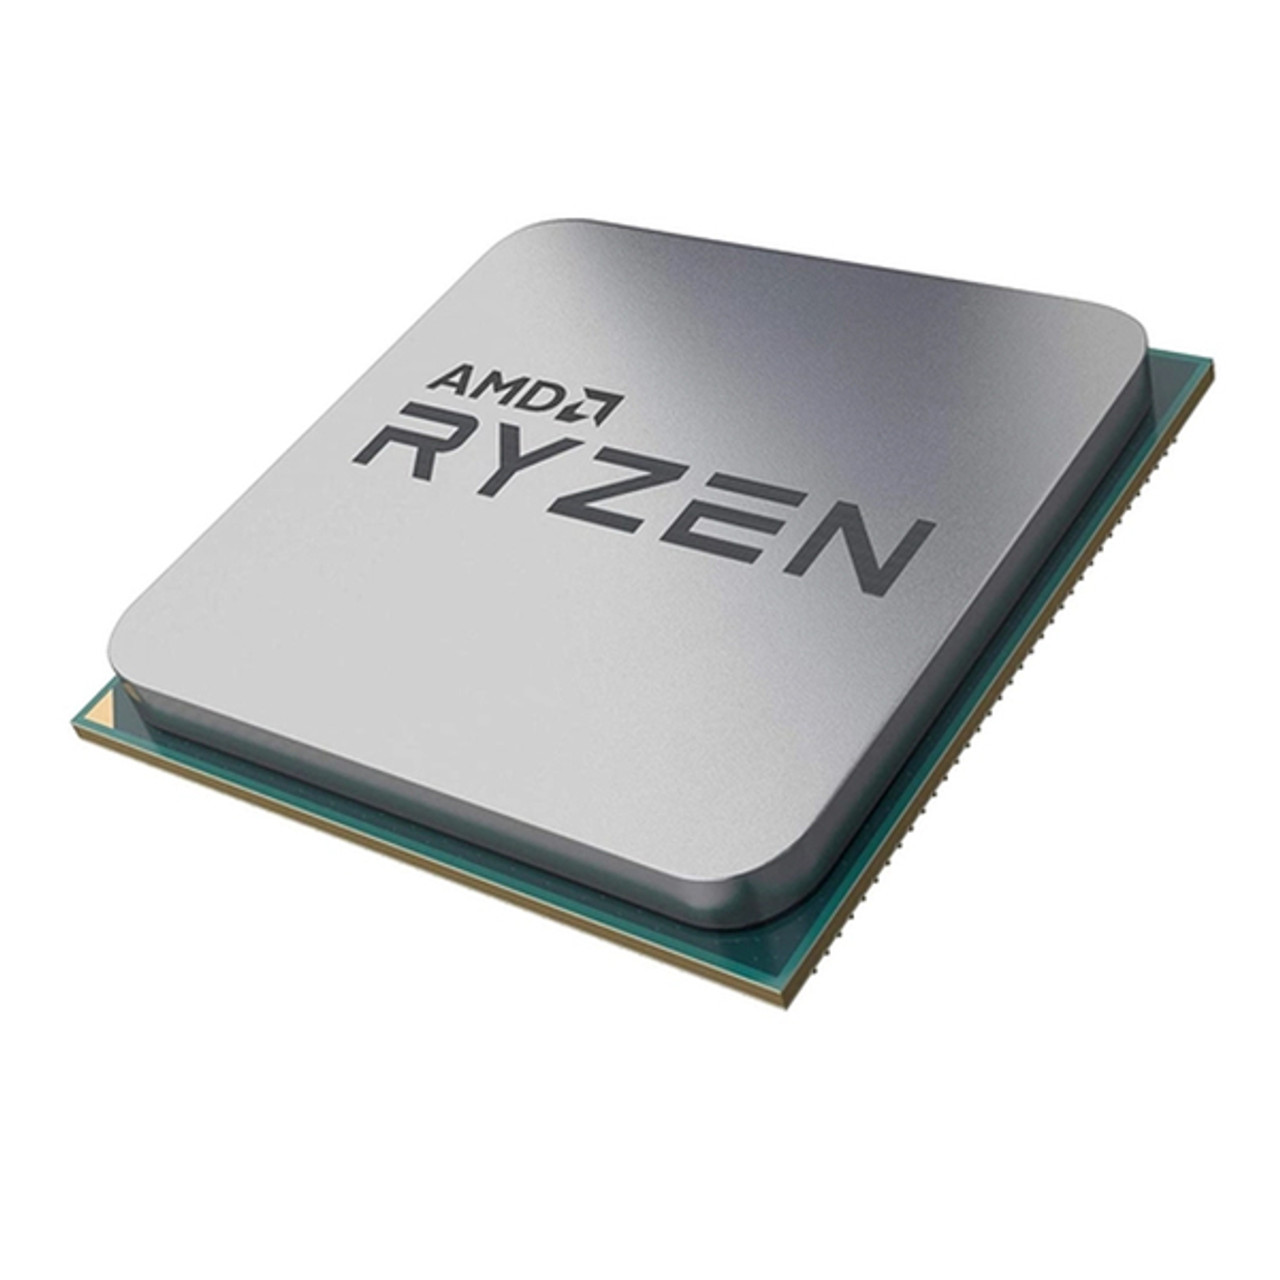 AMD Ryzen 5 5600G Processor (Zen 3) 6-Core 3.9GHz AM4 65W w/ Wraith Stealth Cooler Desktop CPU 100-100000252BOX